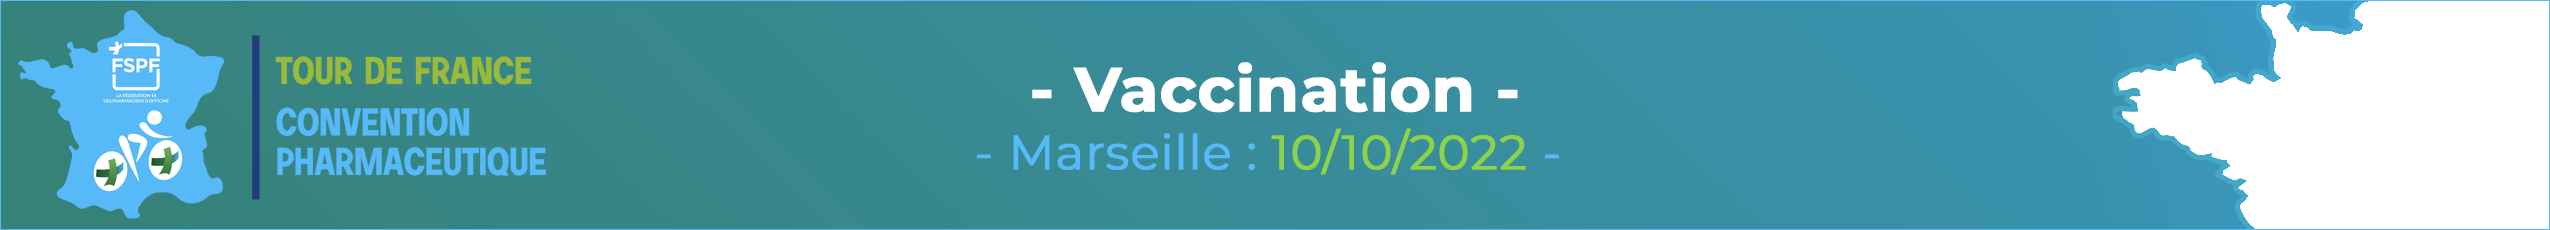 Tour de France FSPF - Vaccination - 10/10/2022